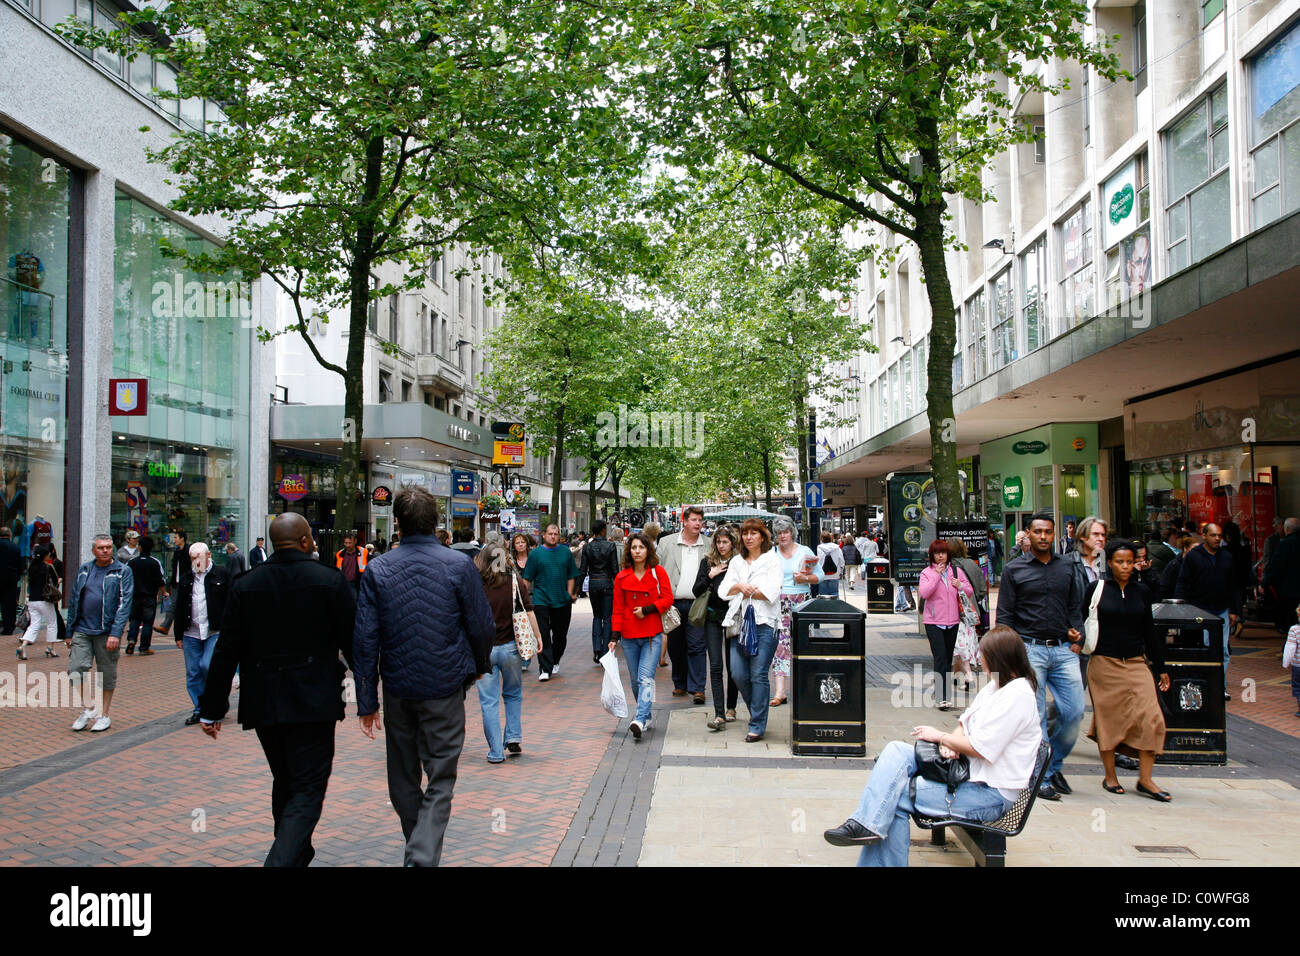 Menschen auf New Street, einer Fußgängerzone mit vielen Geschäften. Birmingham, England, Vereinigtes Königreich. Stockfoto